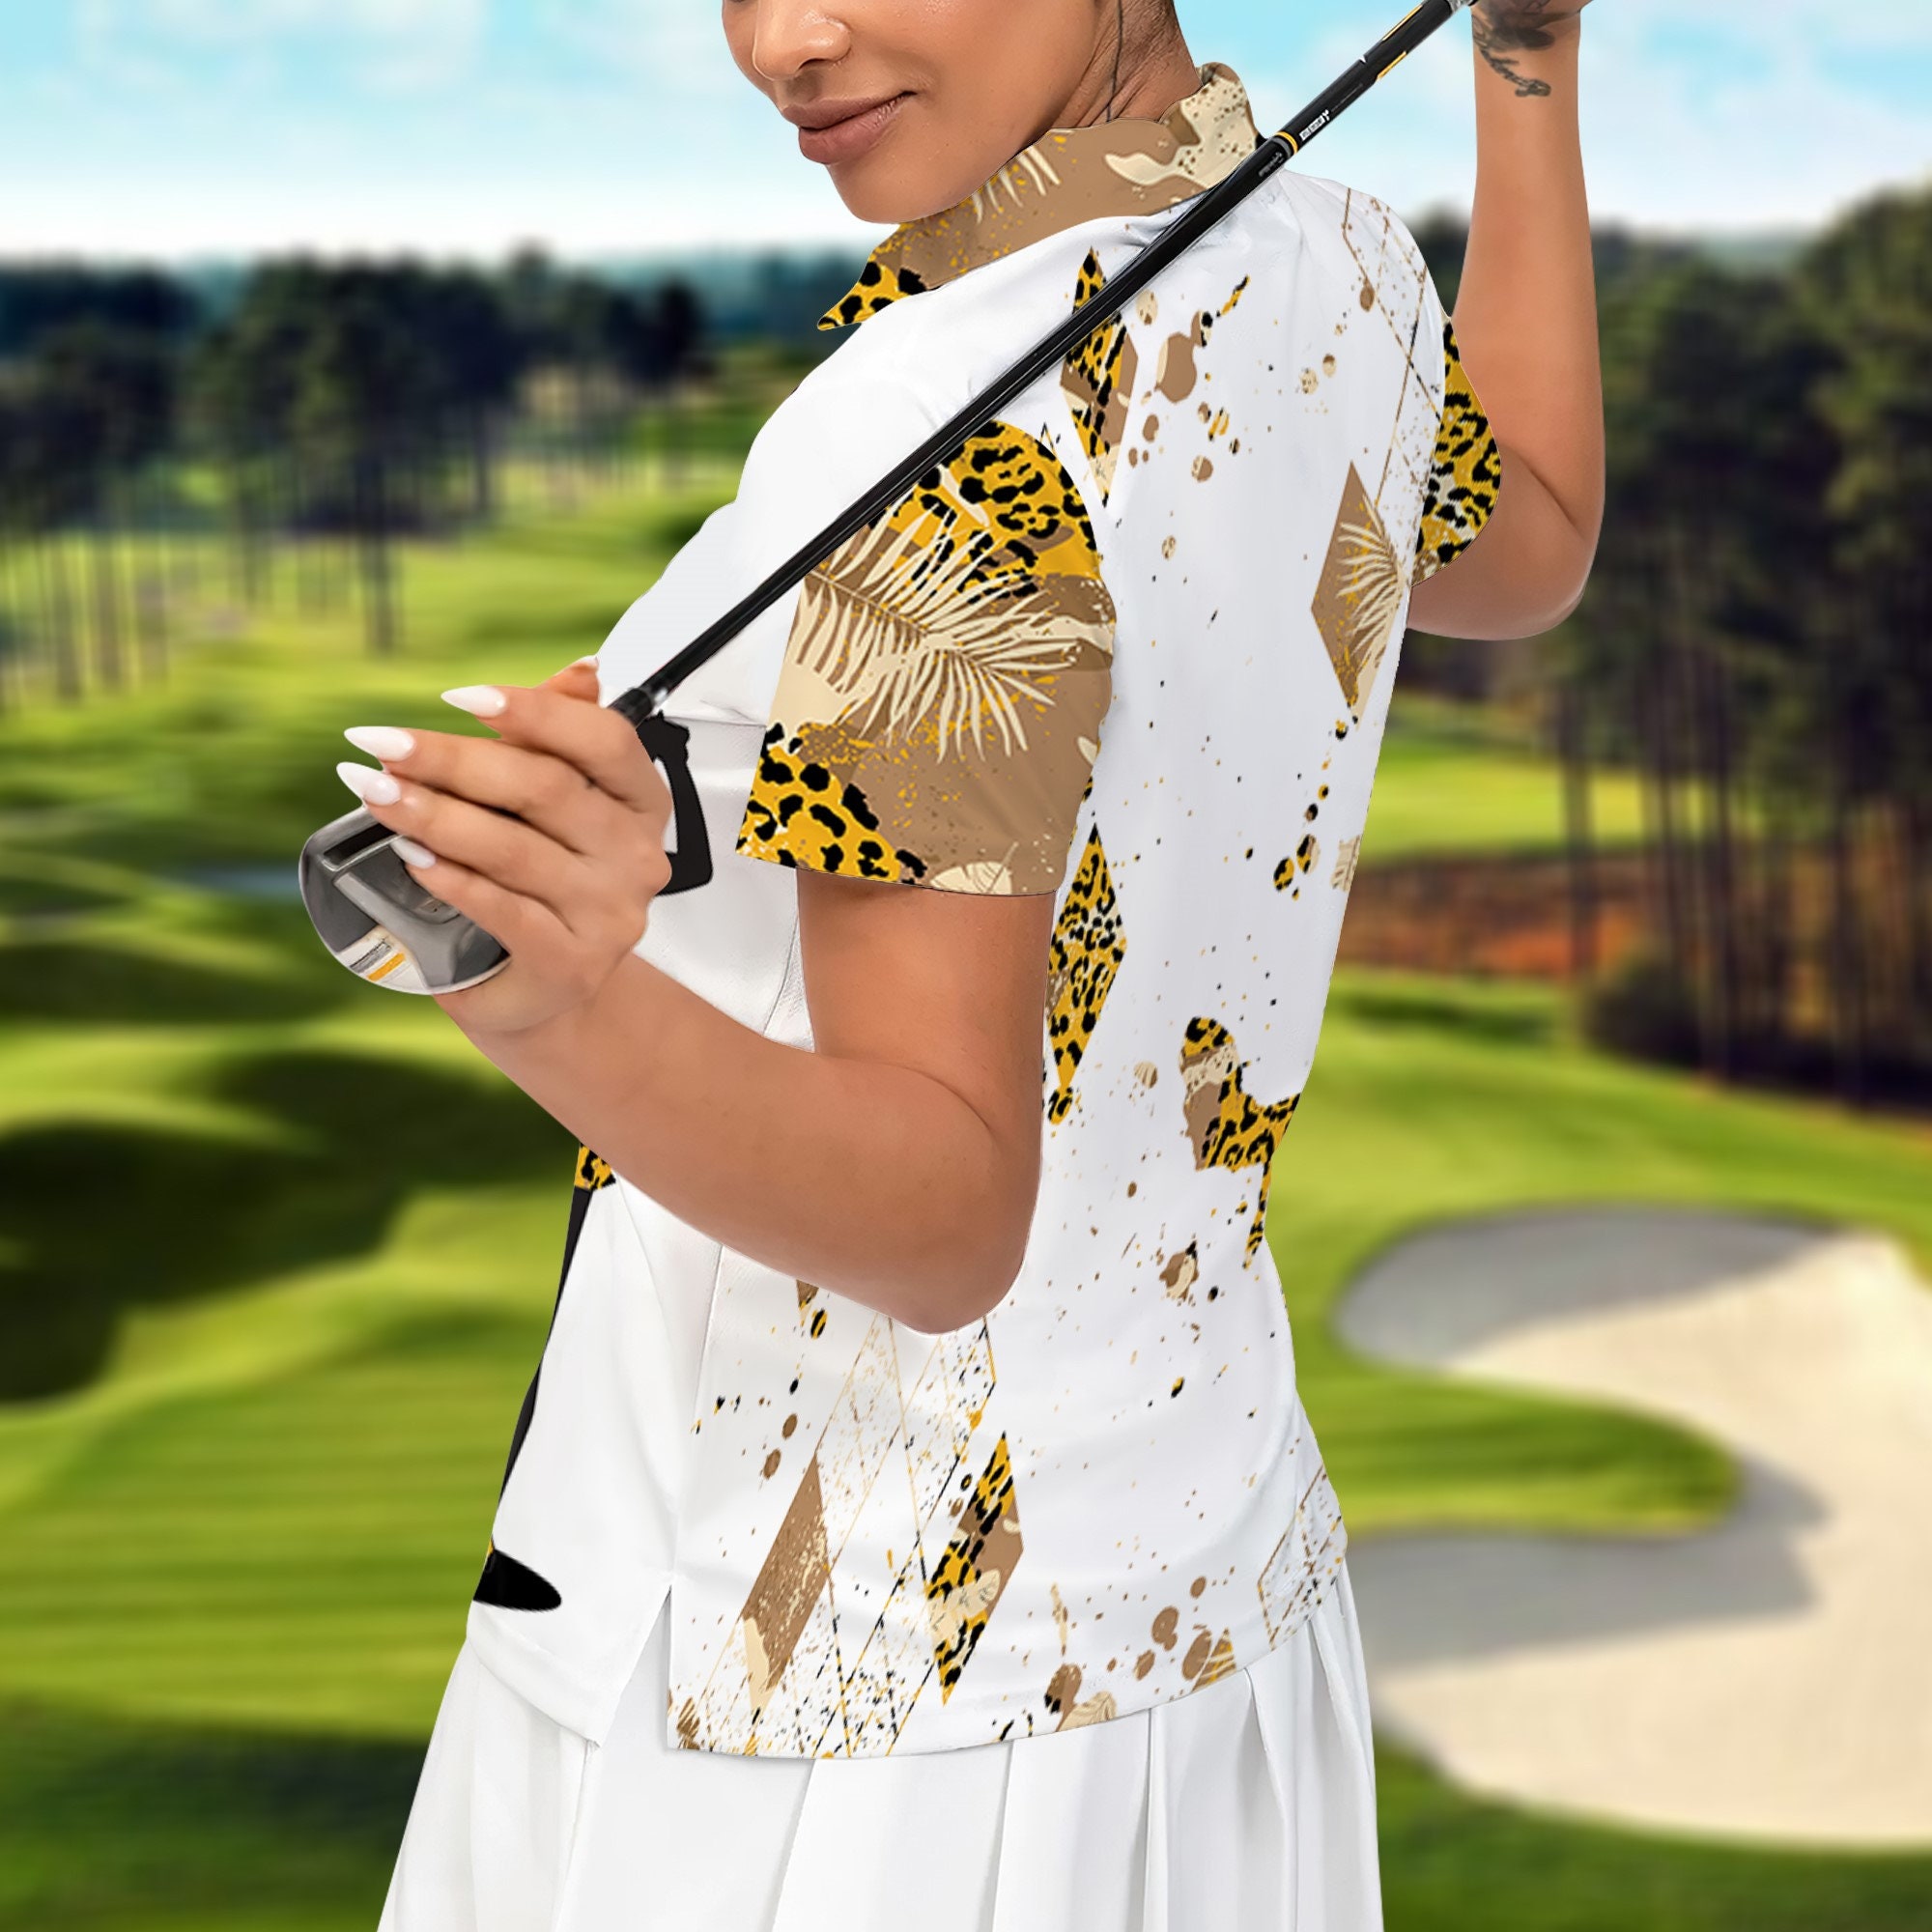 Discover Golf Polo Shirt, Leopard Women Golf Shirt,